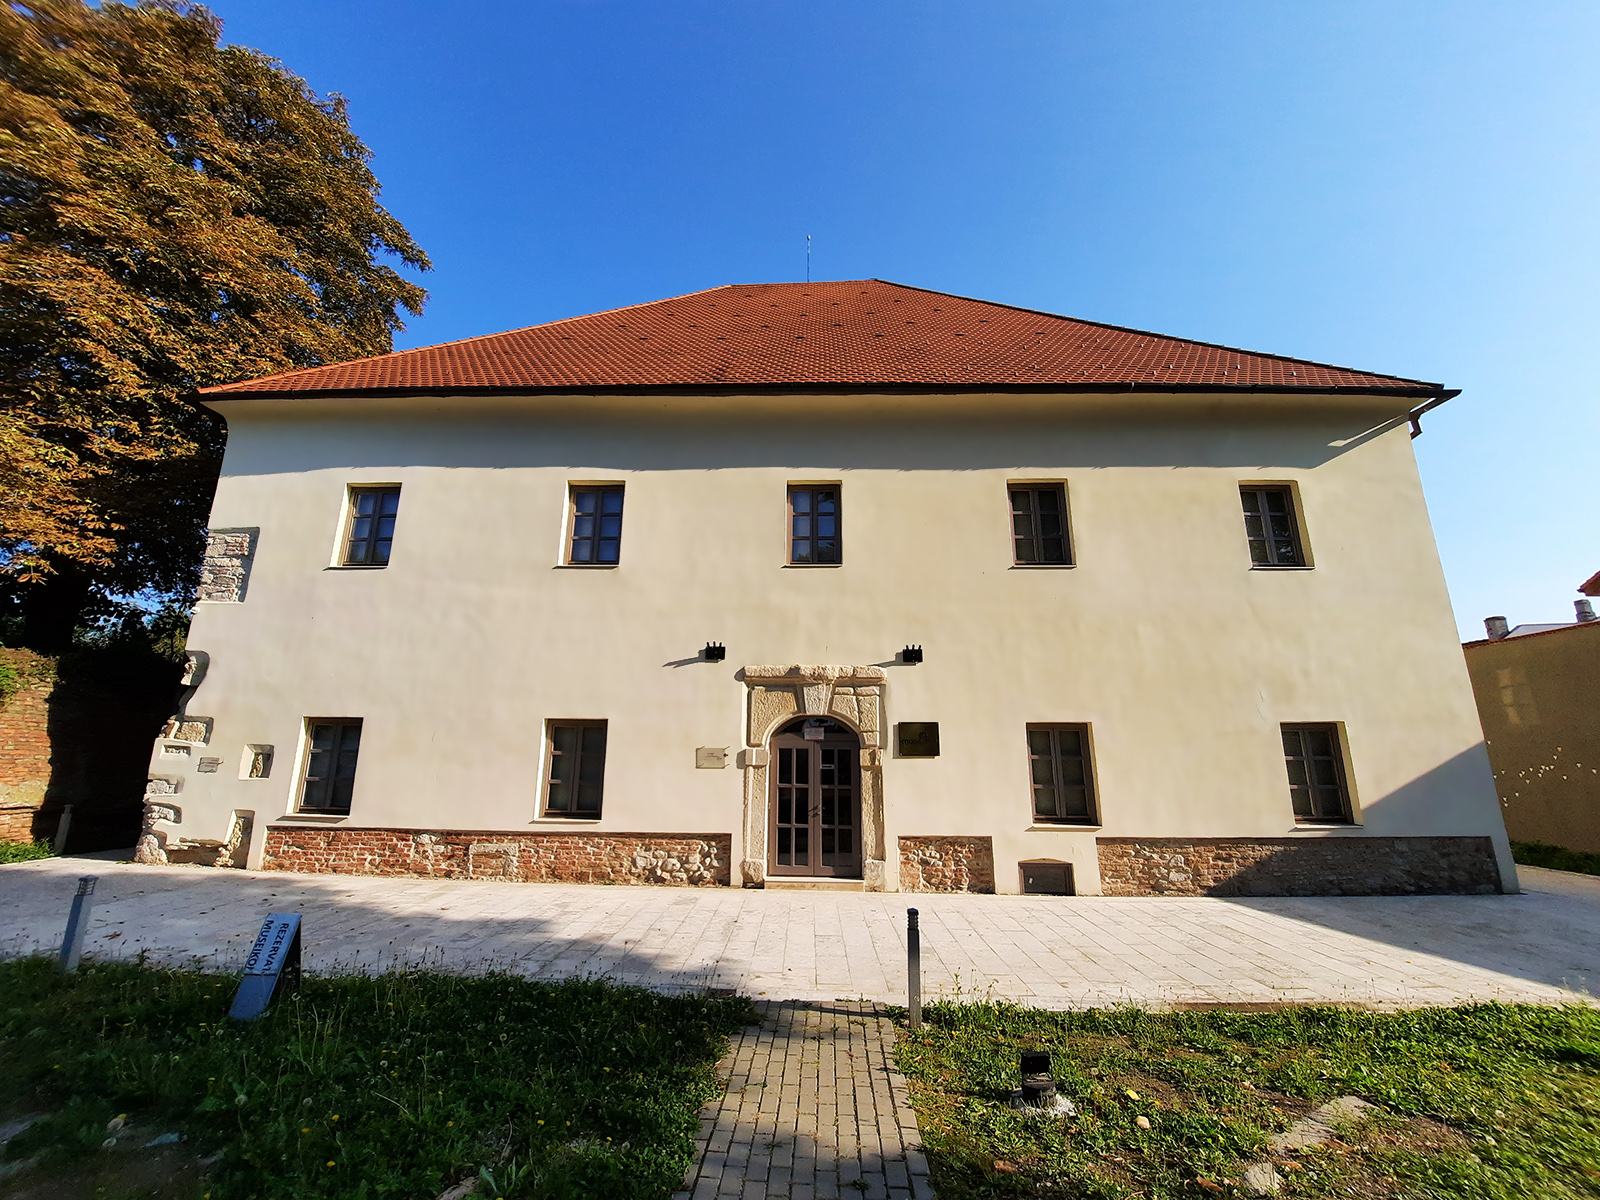 Muzeul de arta religioasa Museikon Alba Iulia